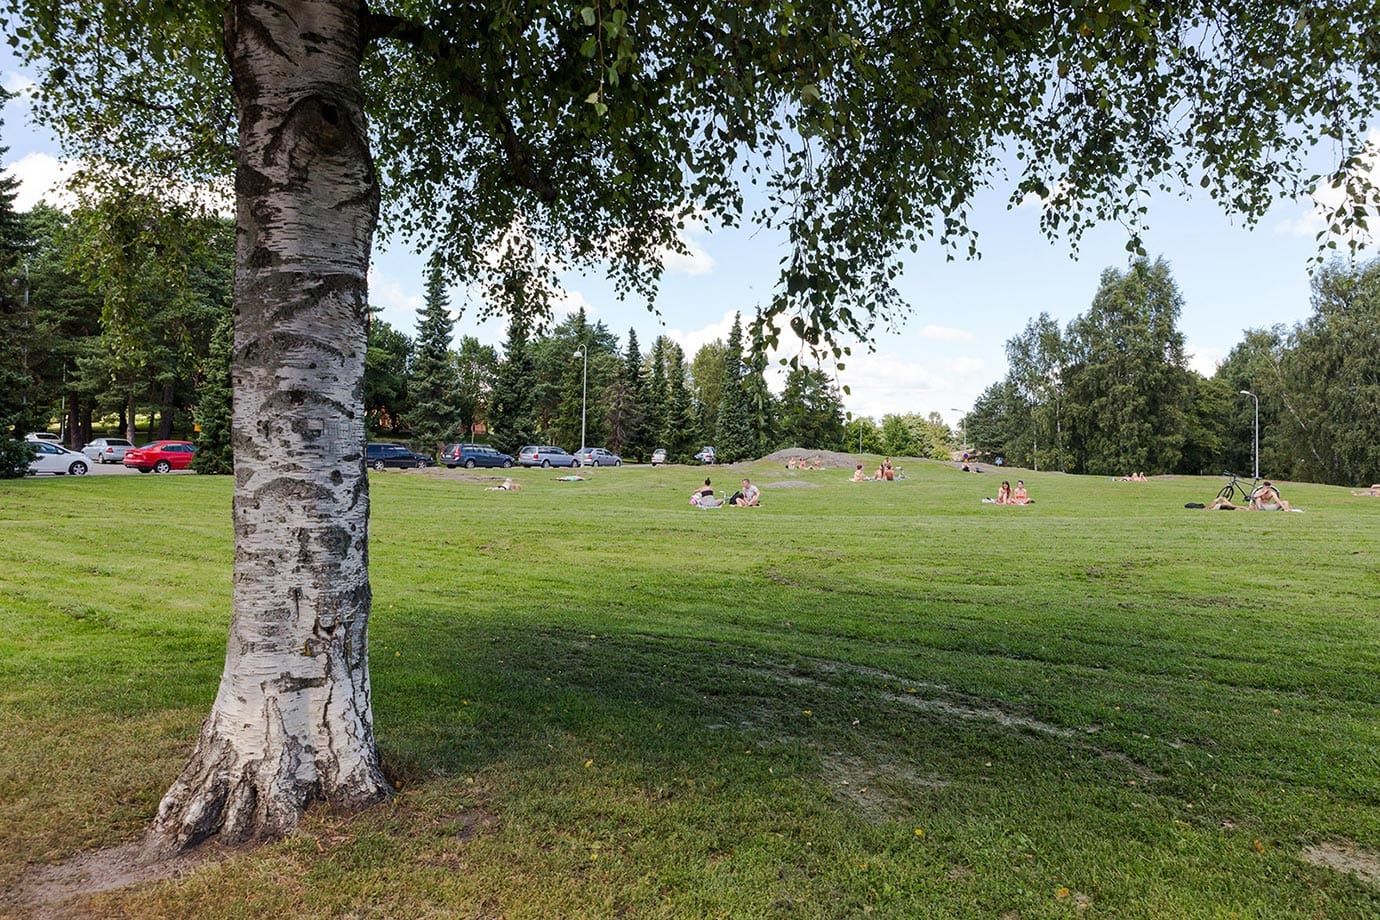 Parks in Helsinki